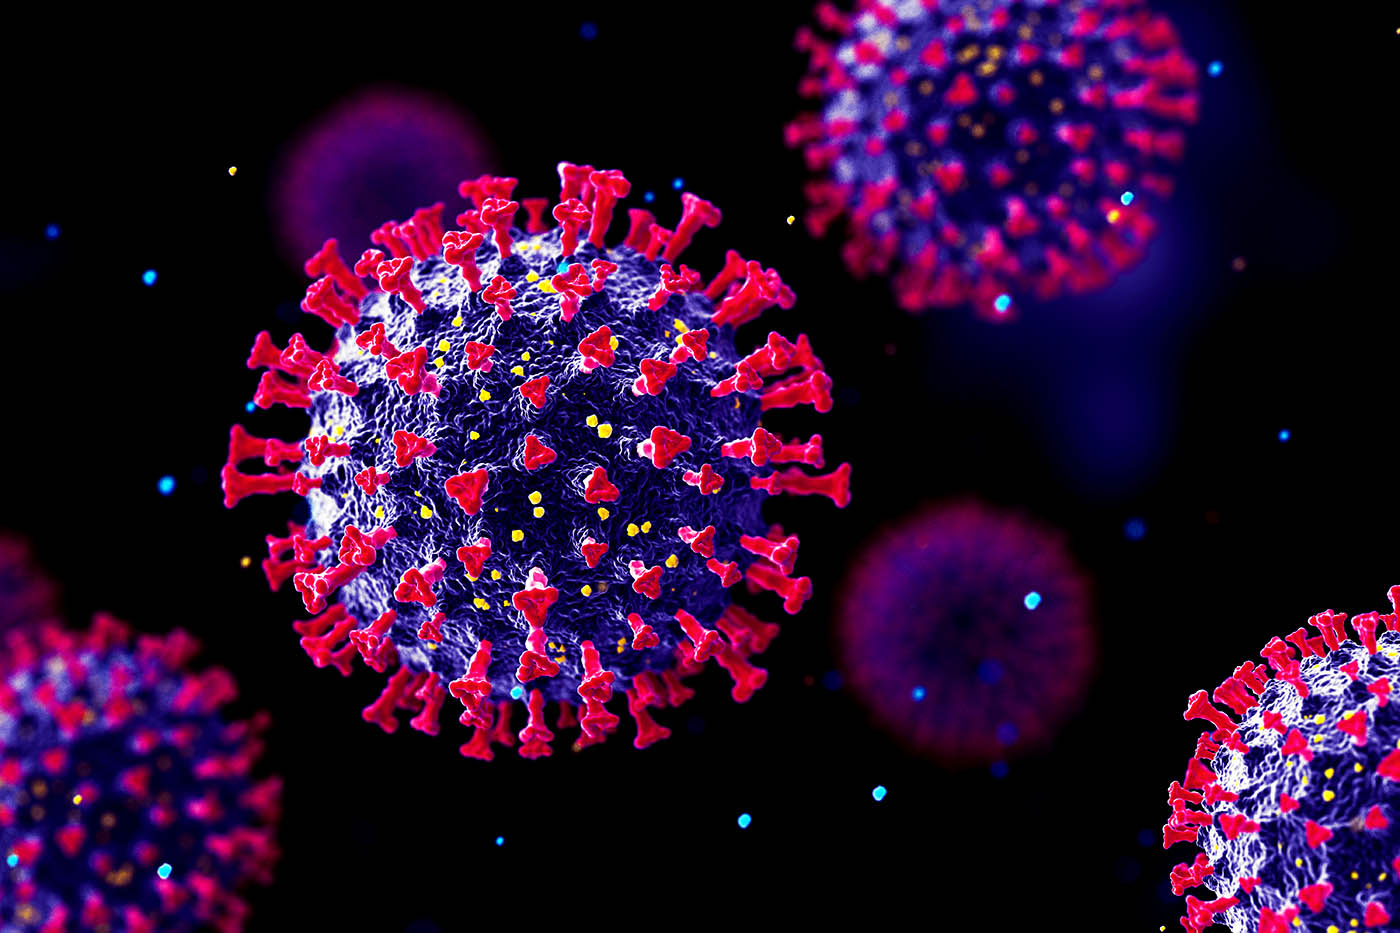 stock photo of corona virus strain